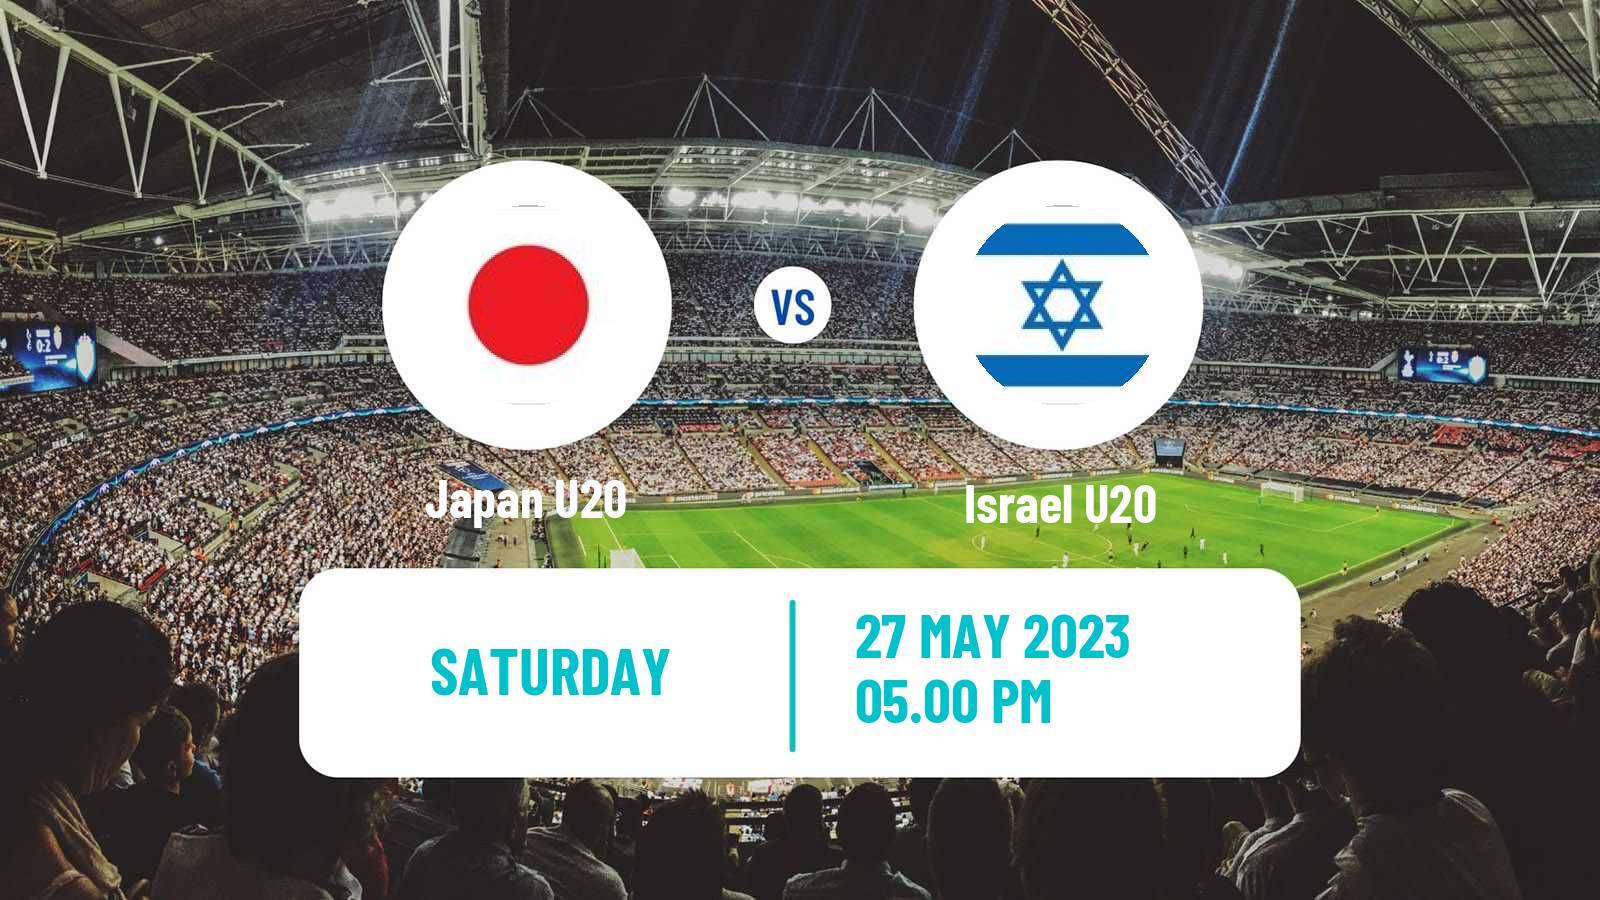 Soccer FIFA World Cup U20 Japan U20 - Israel U20